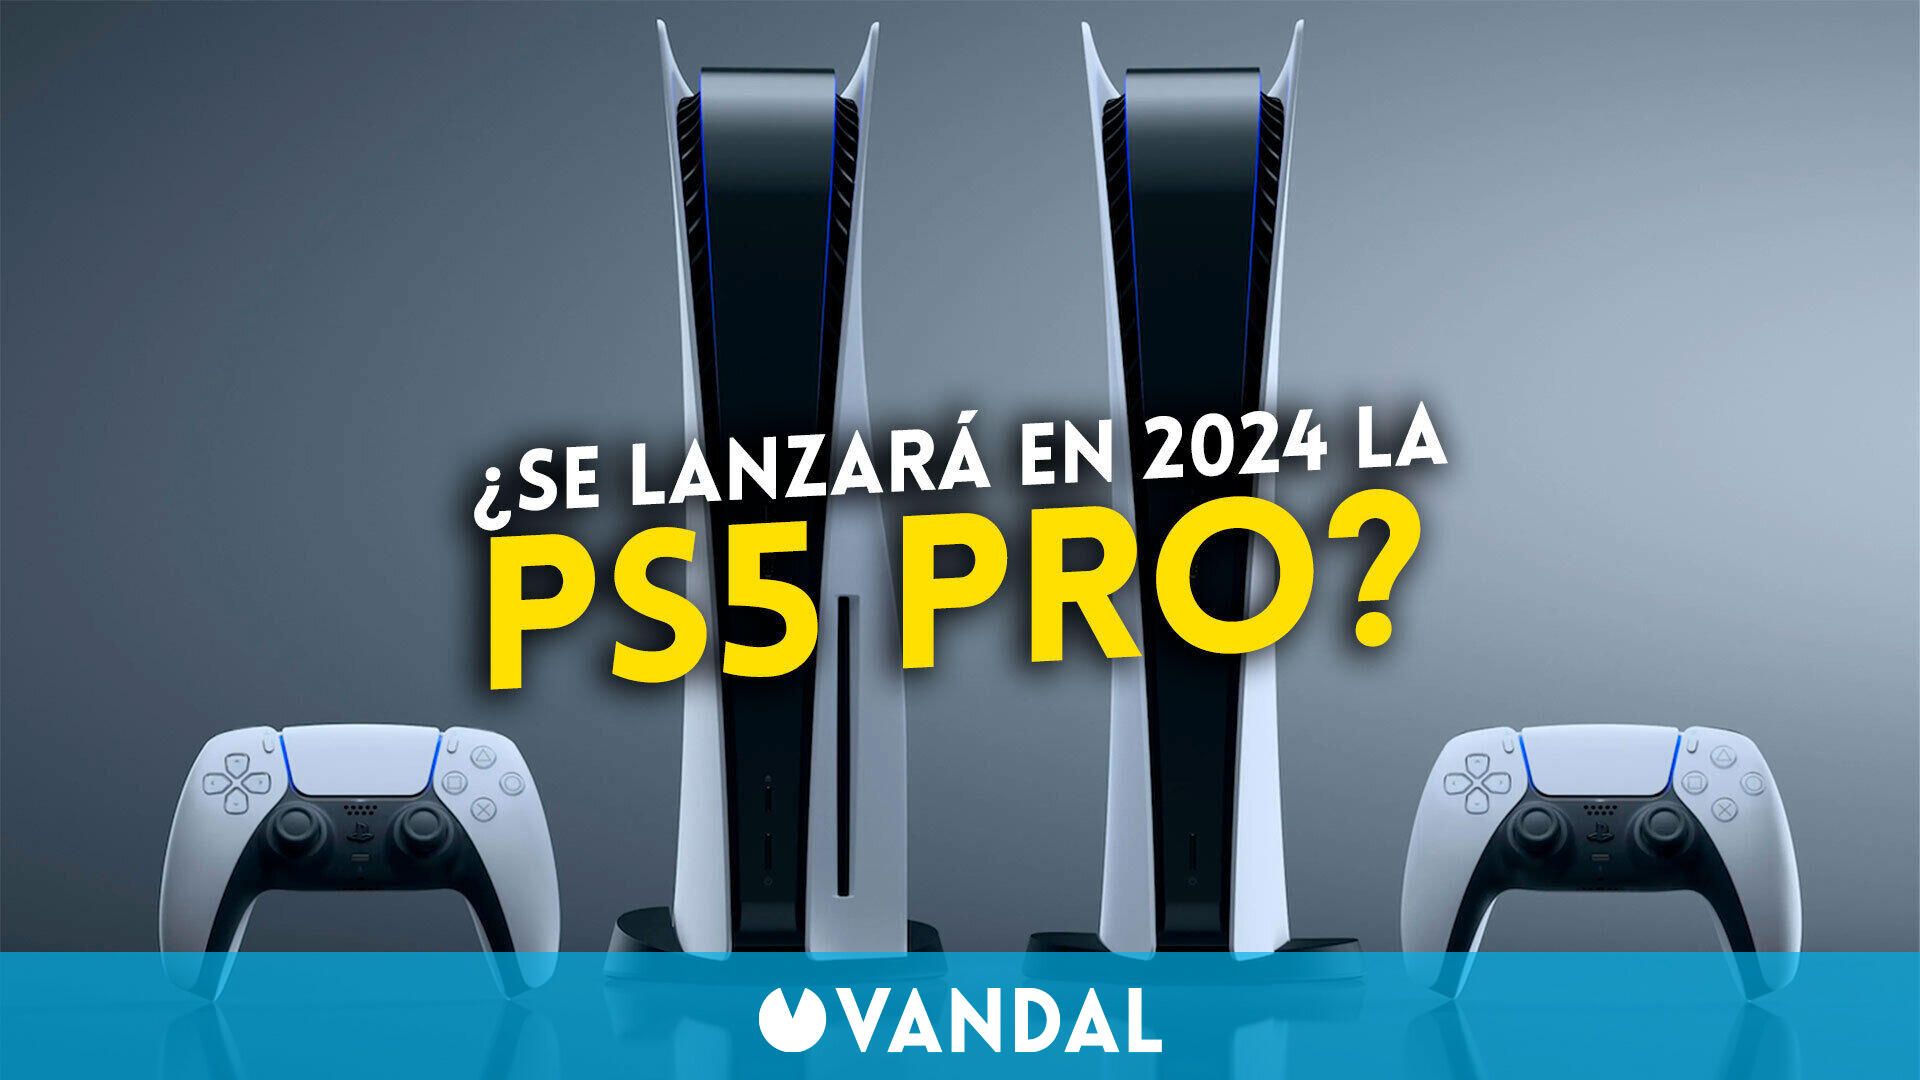 La PS5 Pro è già in fase di sviluppo e arriverà entro la fine del 2024, secondo le fonti